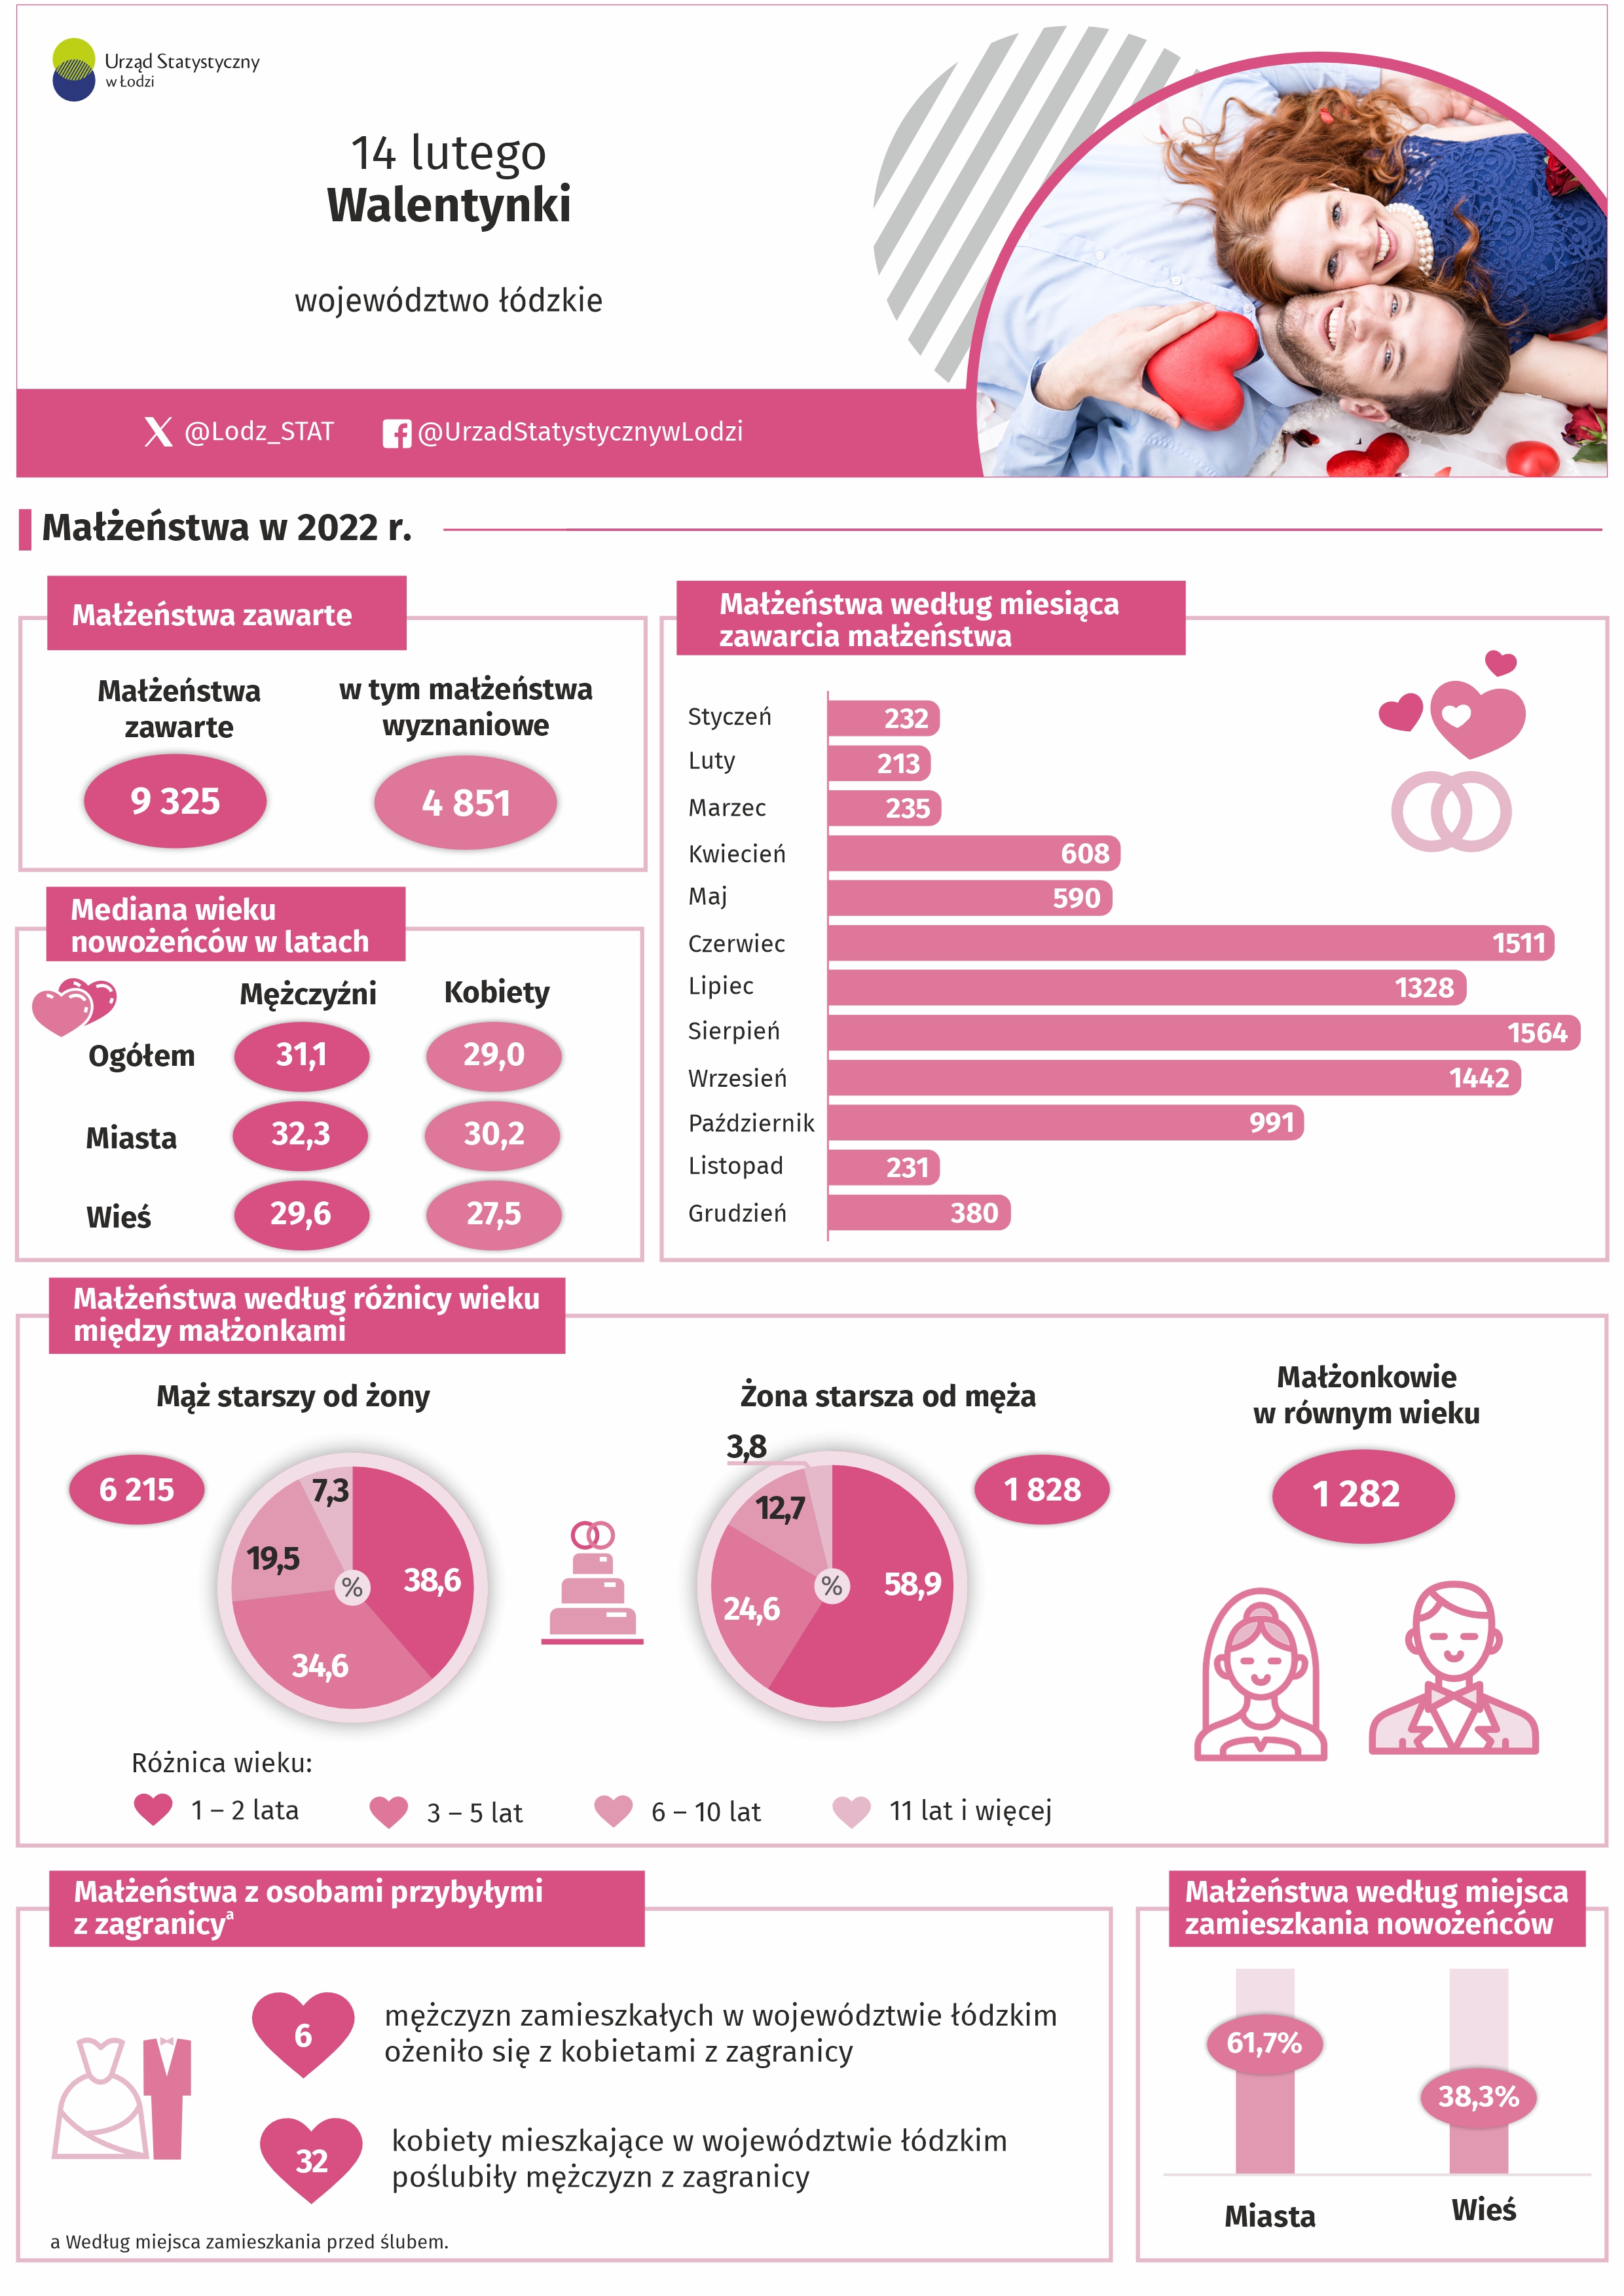 Infografika 2023 z okazji dnia 14 lutego - Walentynek przedstawia dane dotyczące małżeństw w 2022 r.